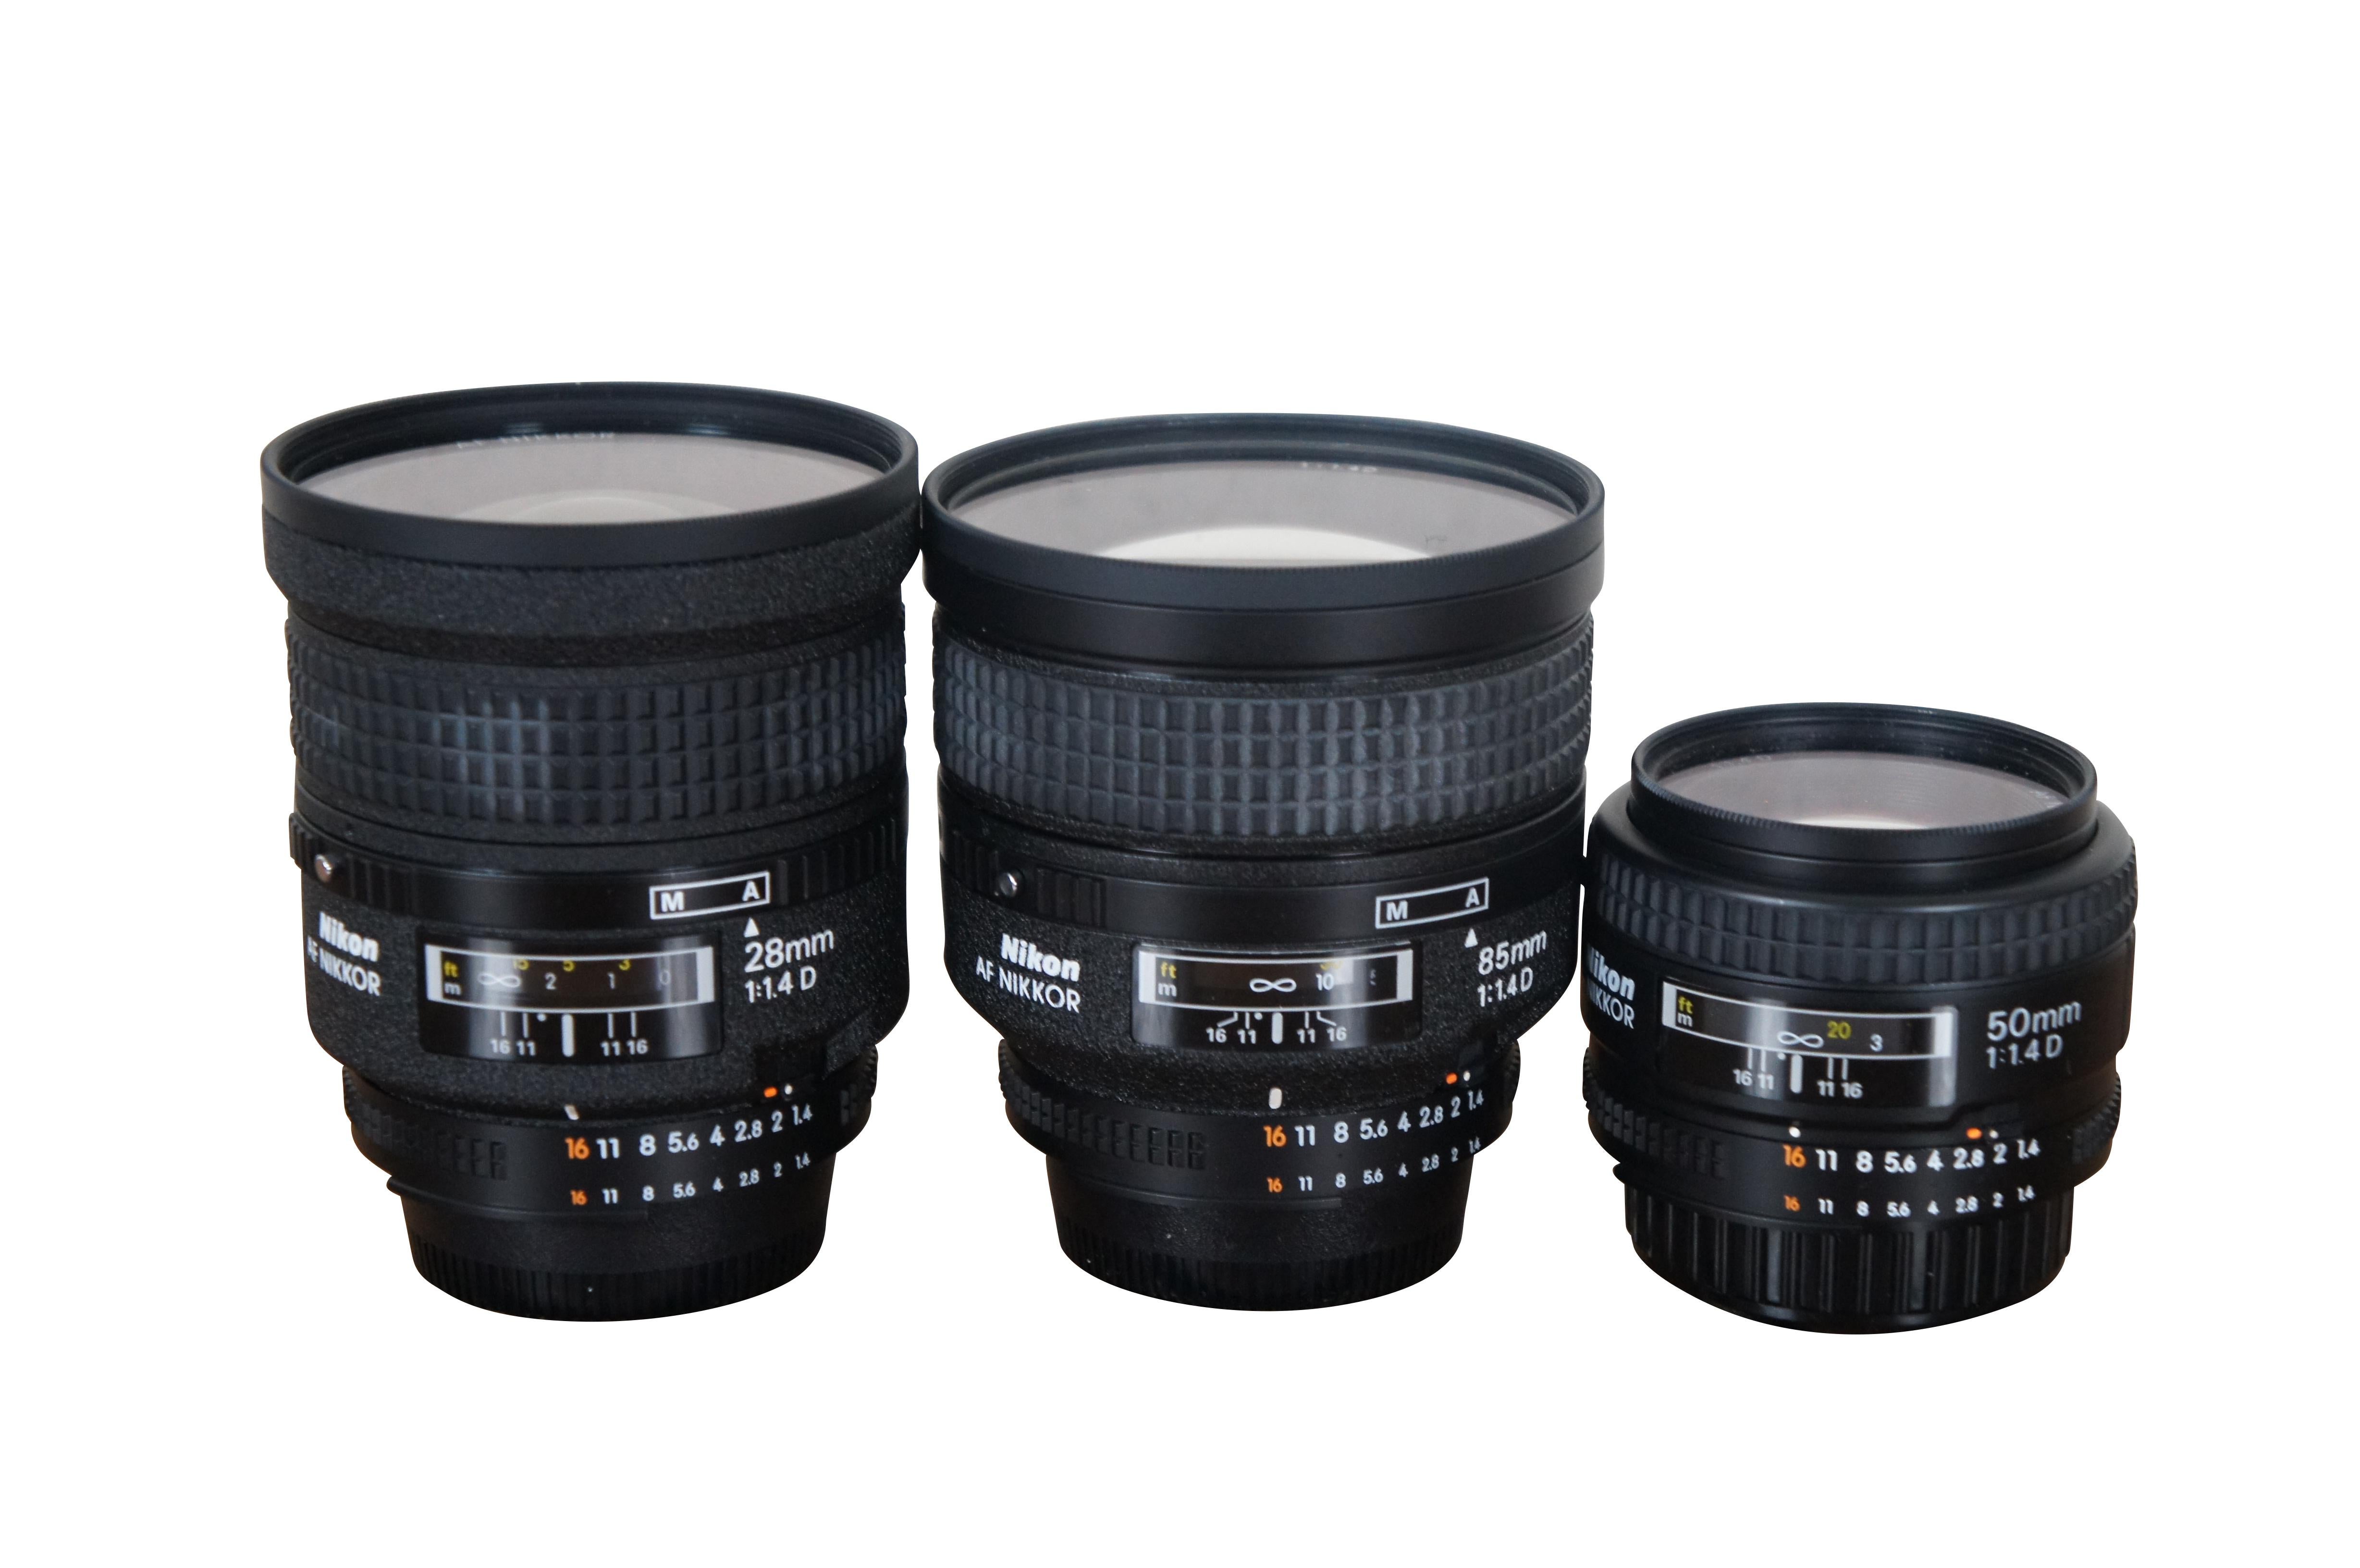 Vintage Nikon camera lens lot.  Comes with Lightware case, 3 Nikon AF Nikkor 1:1.4D lenses (28mm, 85mm, and 50mm), Nikon Speedlight SB-28 flash, 4 Nikon lens hoods (HN-31, HK-&, HN-1, and HR-2 55/1.2 R8), 3 Nikon L37c filters / diffusers (52mm,